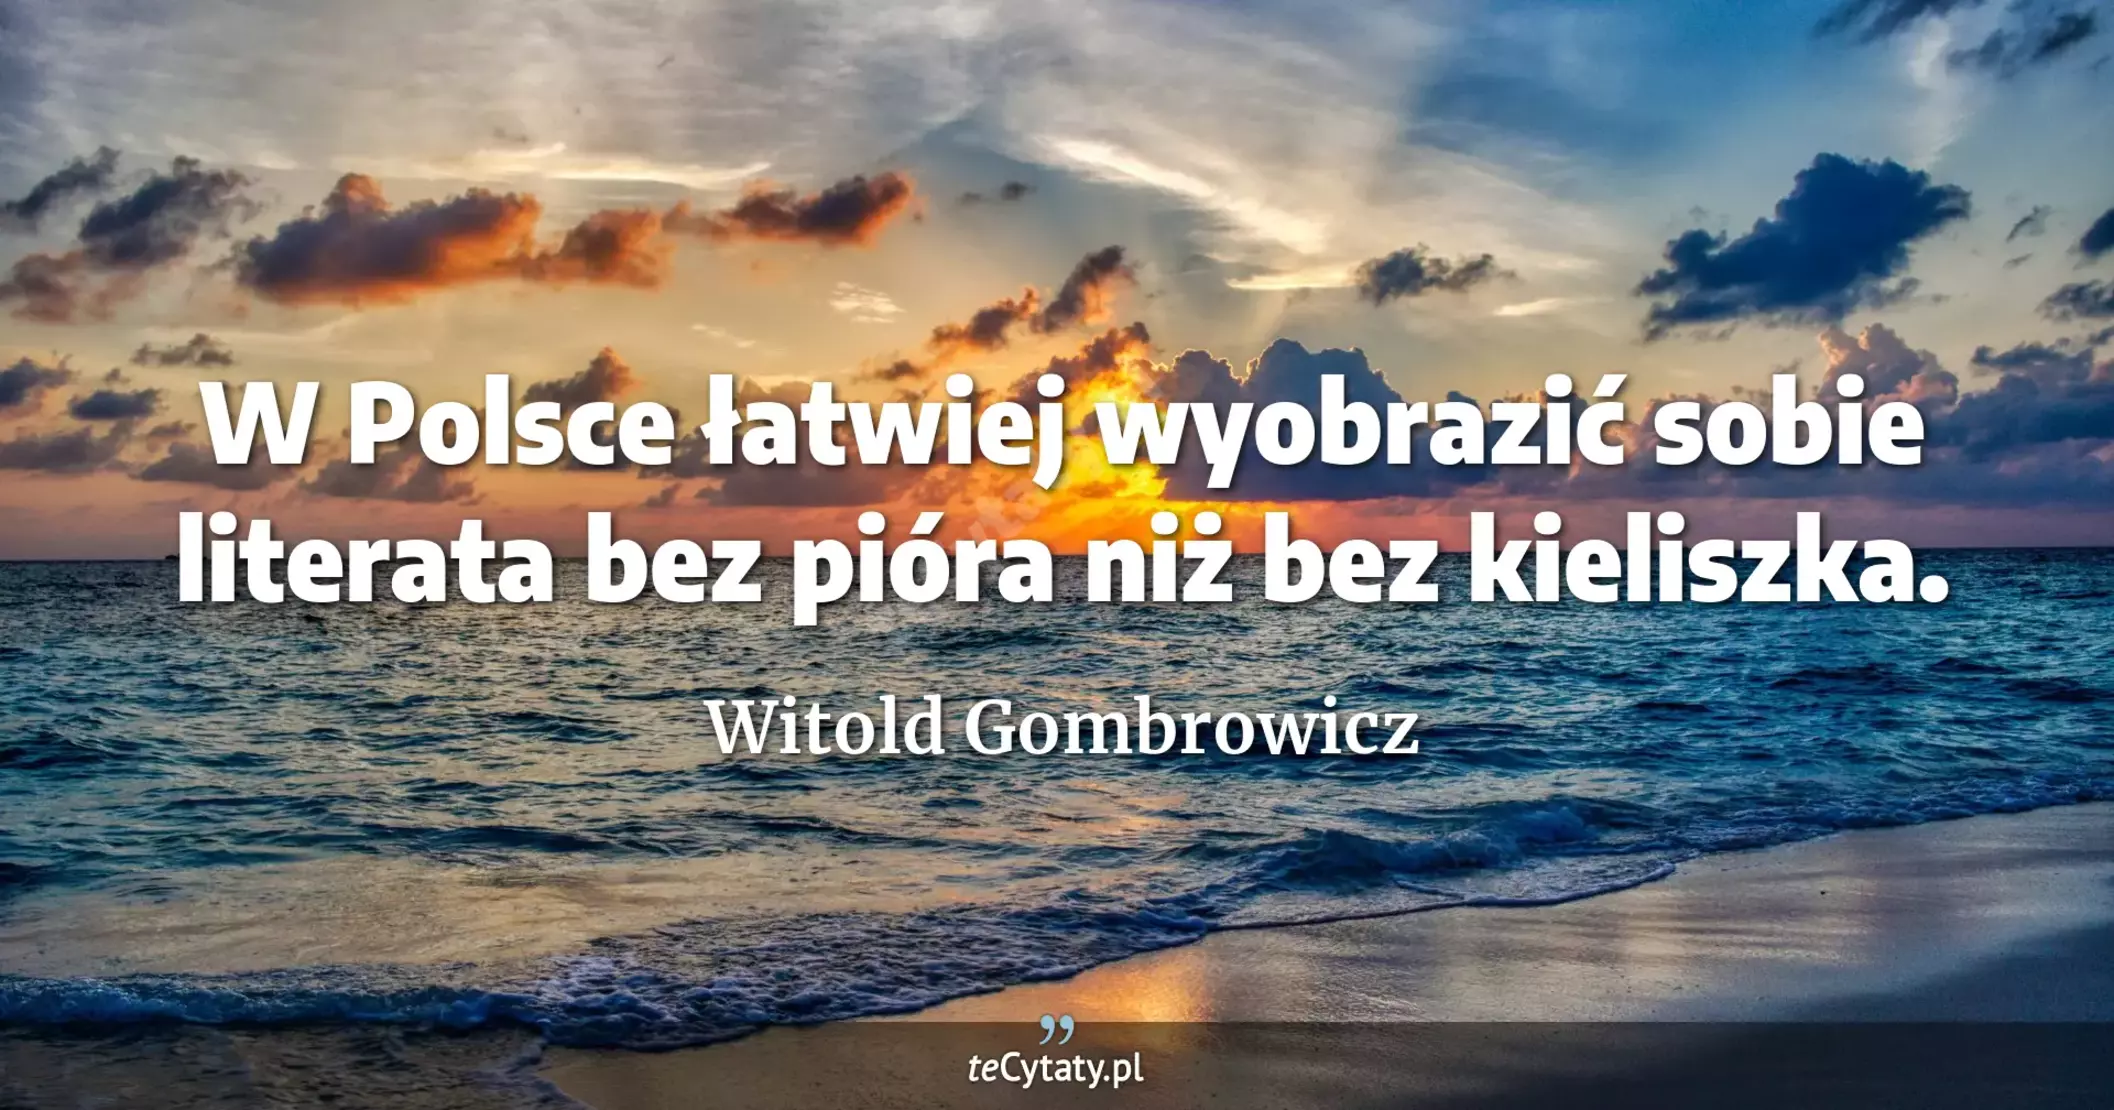 W Polsce łatwiej wyobrazić sobie literata bez pióra niż bez kieliszka. - Witold Gombrowicz